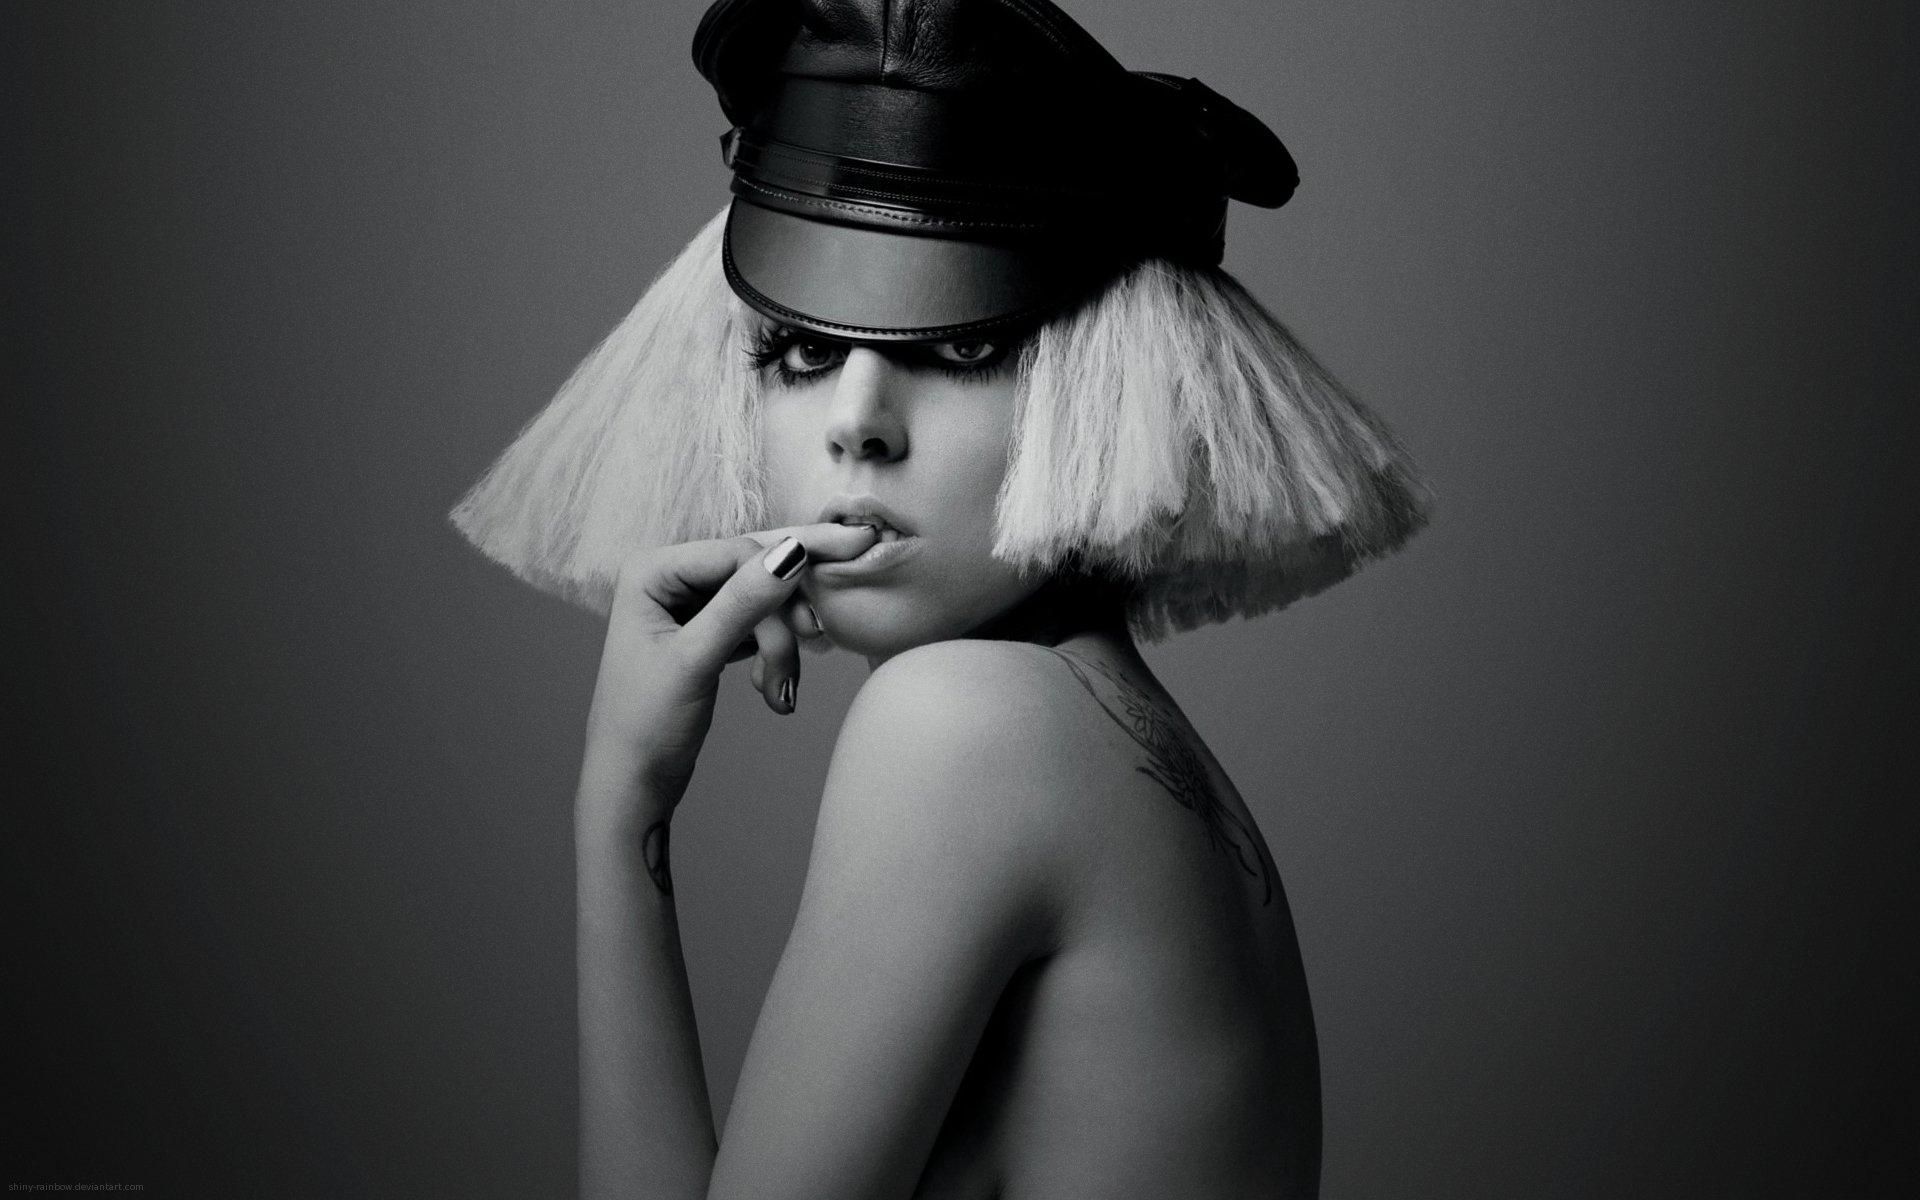 "Действительно ли это Леди Гага": реакция соцсетей на кардинальное изменение имиджа певицы